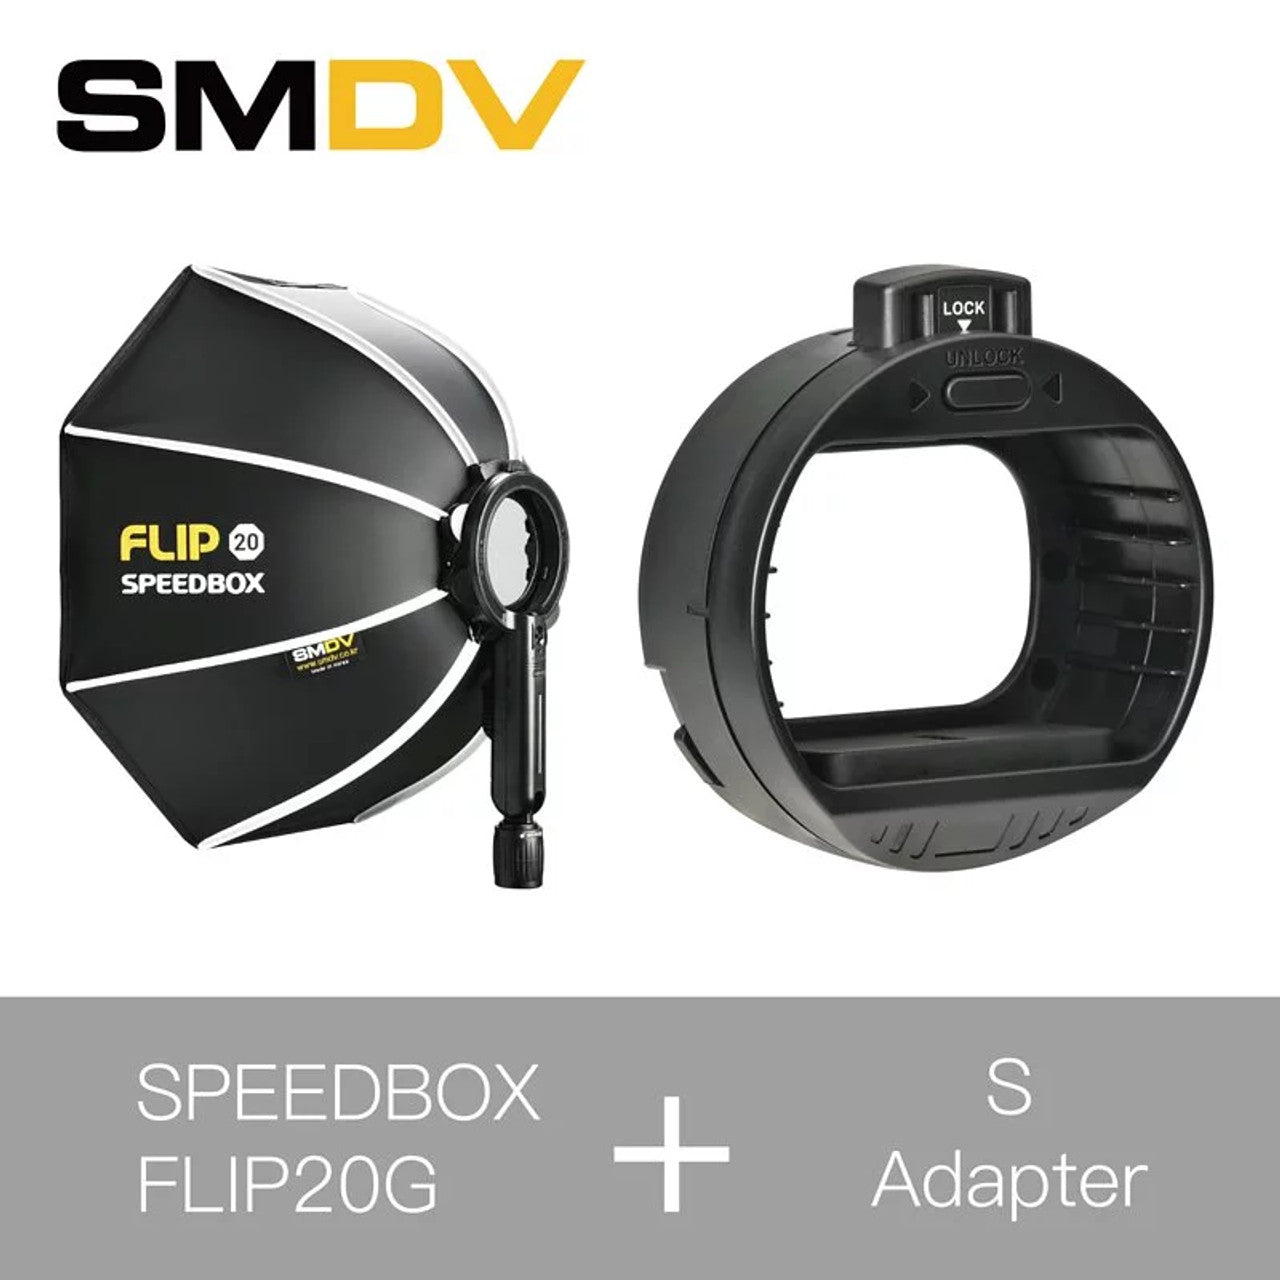 SMDV Speedbox Flip 20 50cm 快開柔光箱連S Adapter